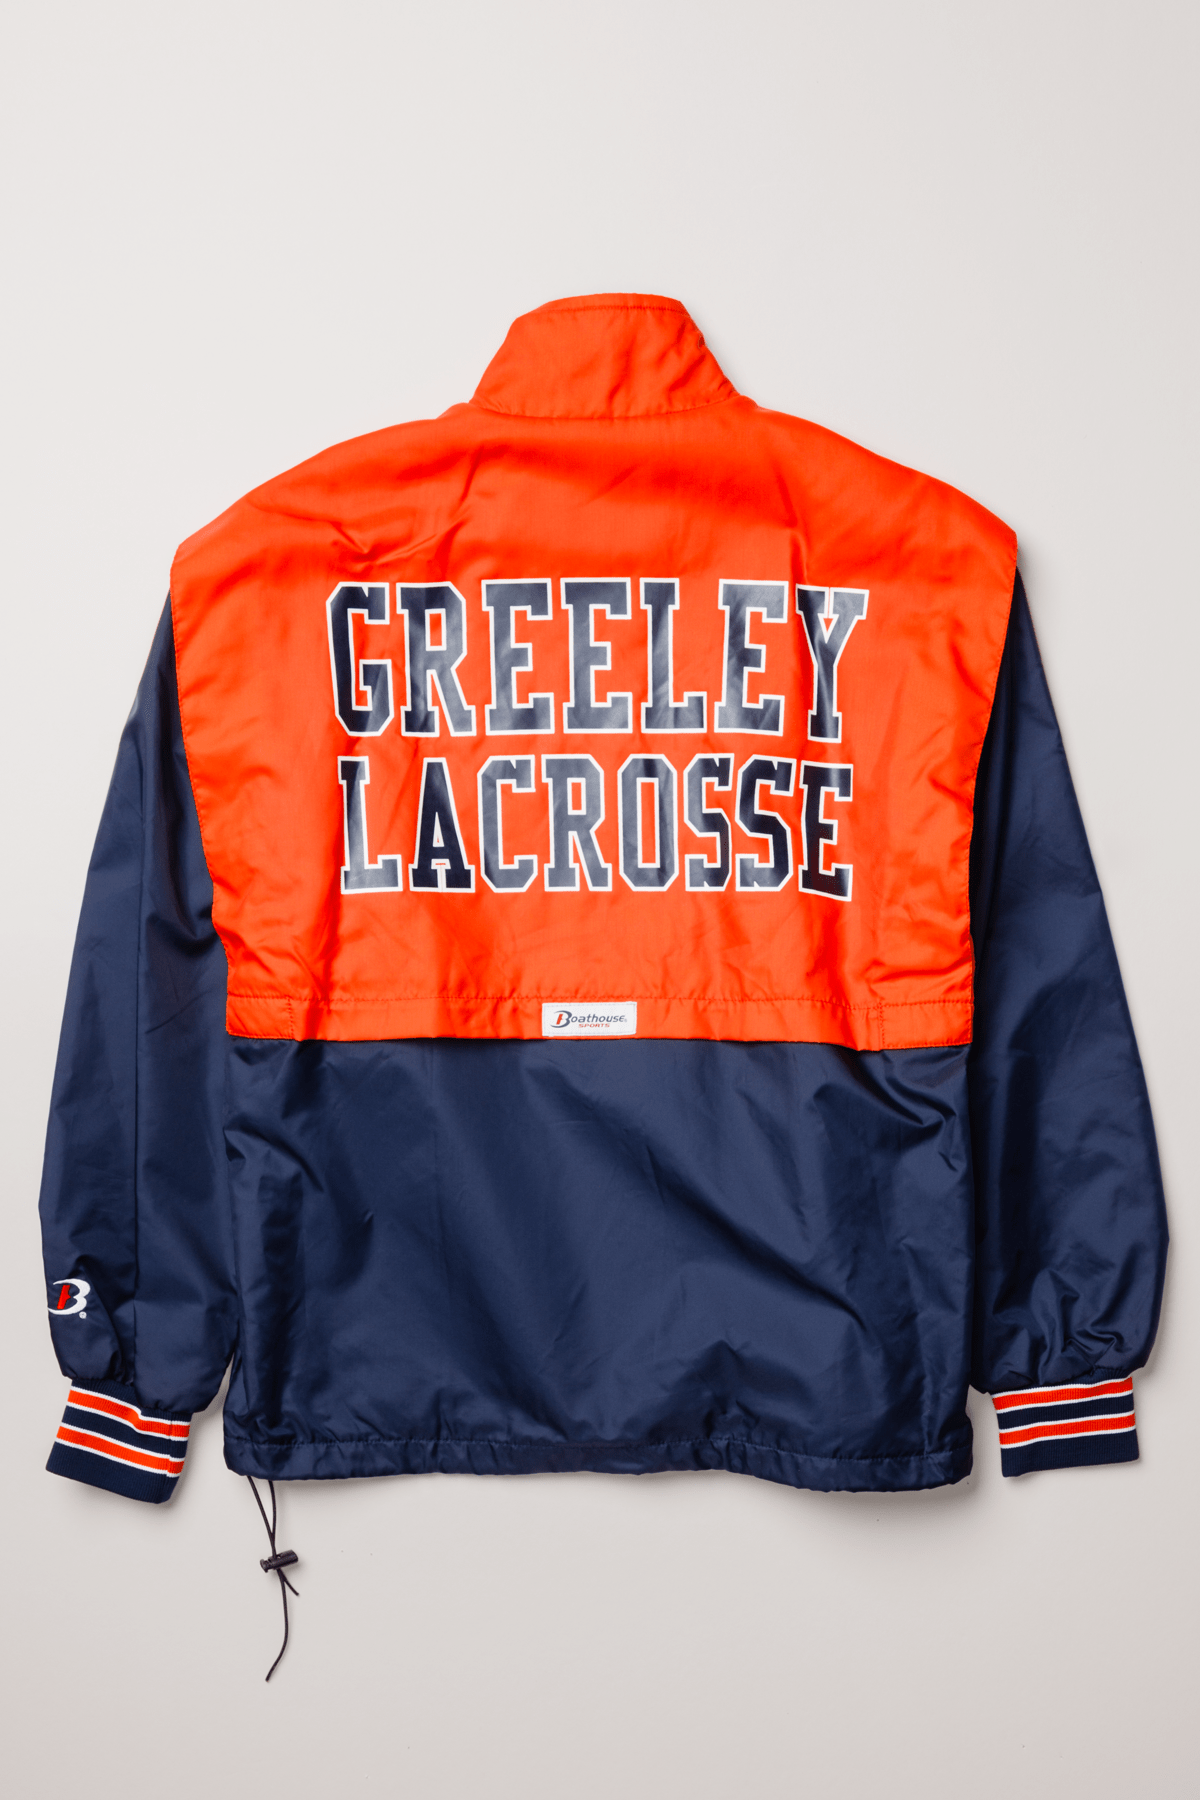 Greeley Lacrosse Unisex Mission Jacket Medium